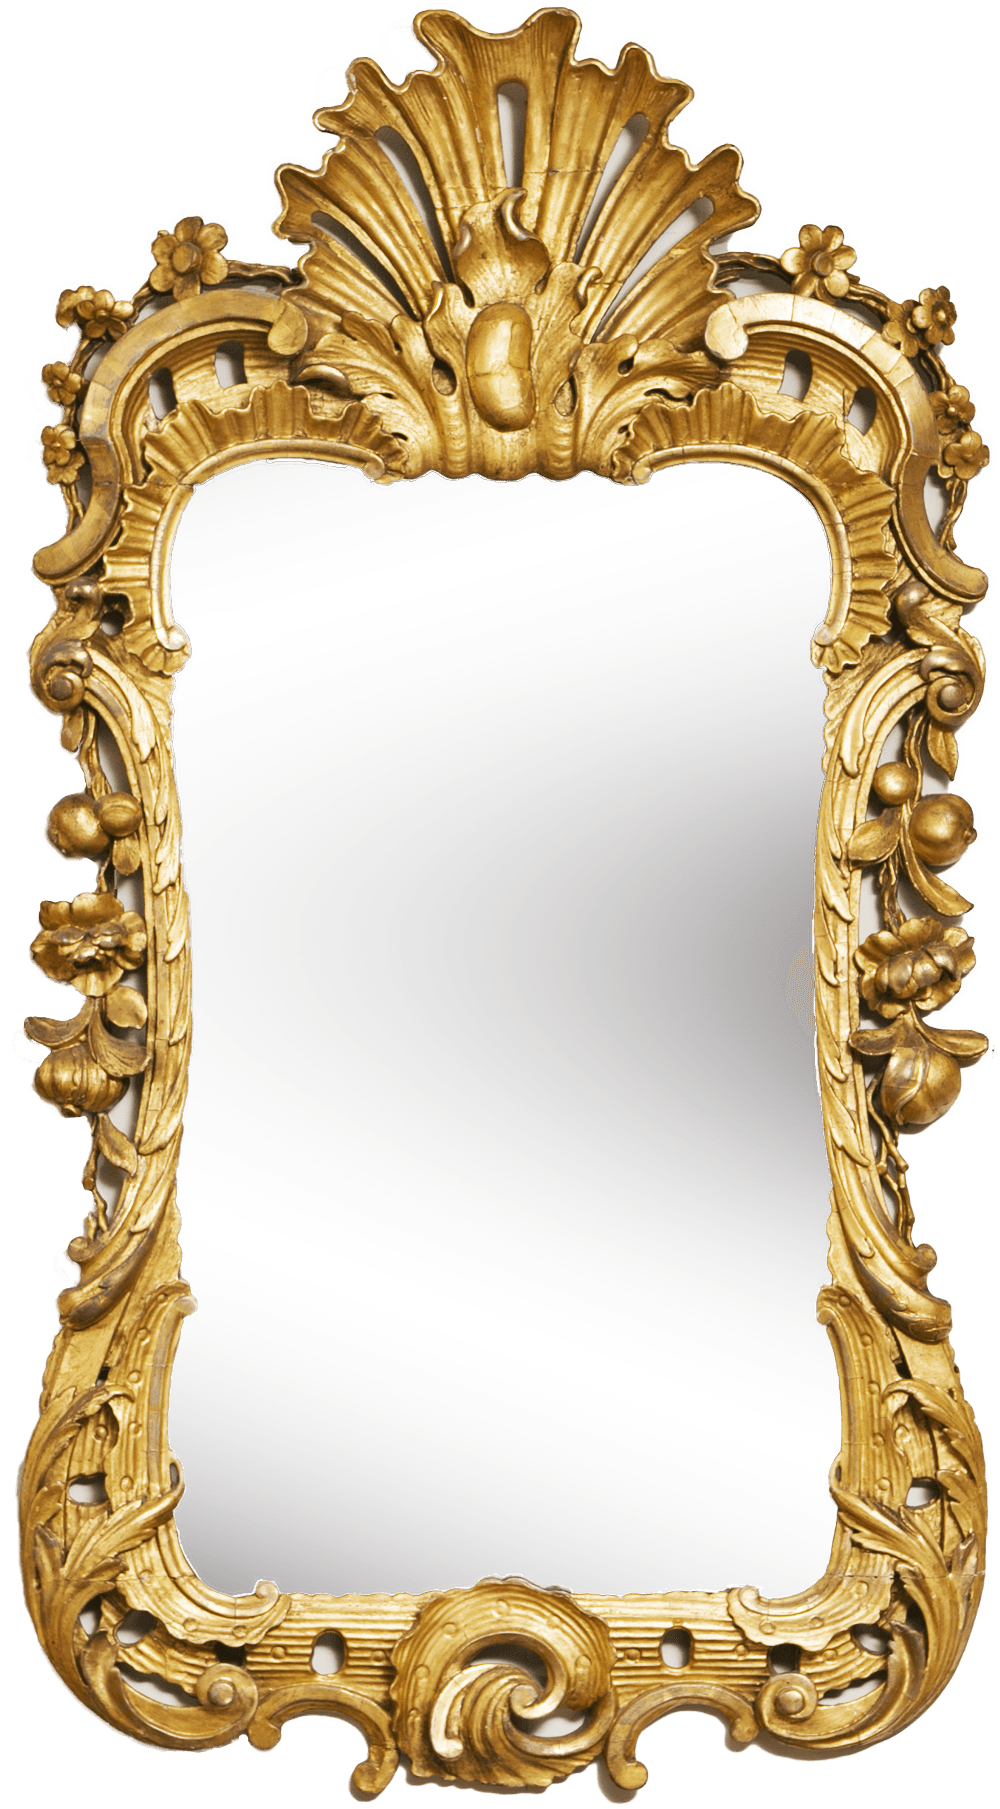 Mirror Gold Frame transparent PNG.